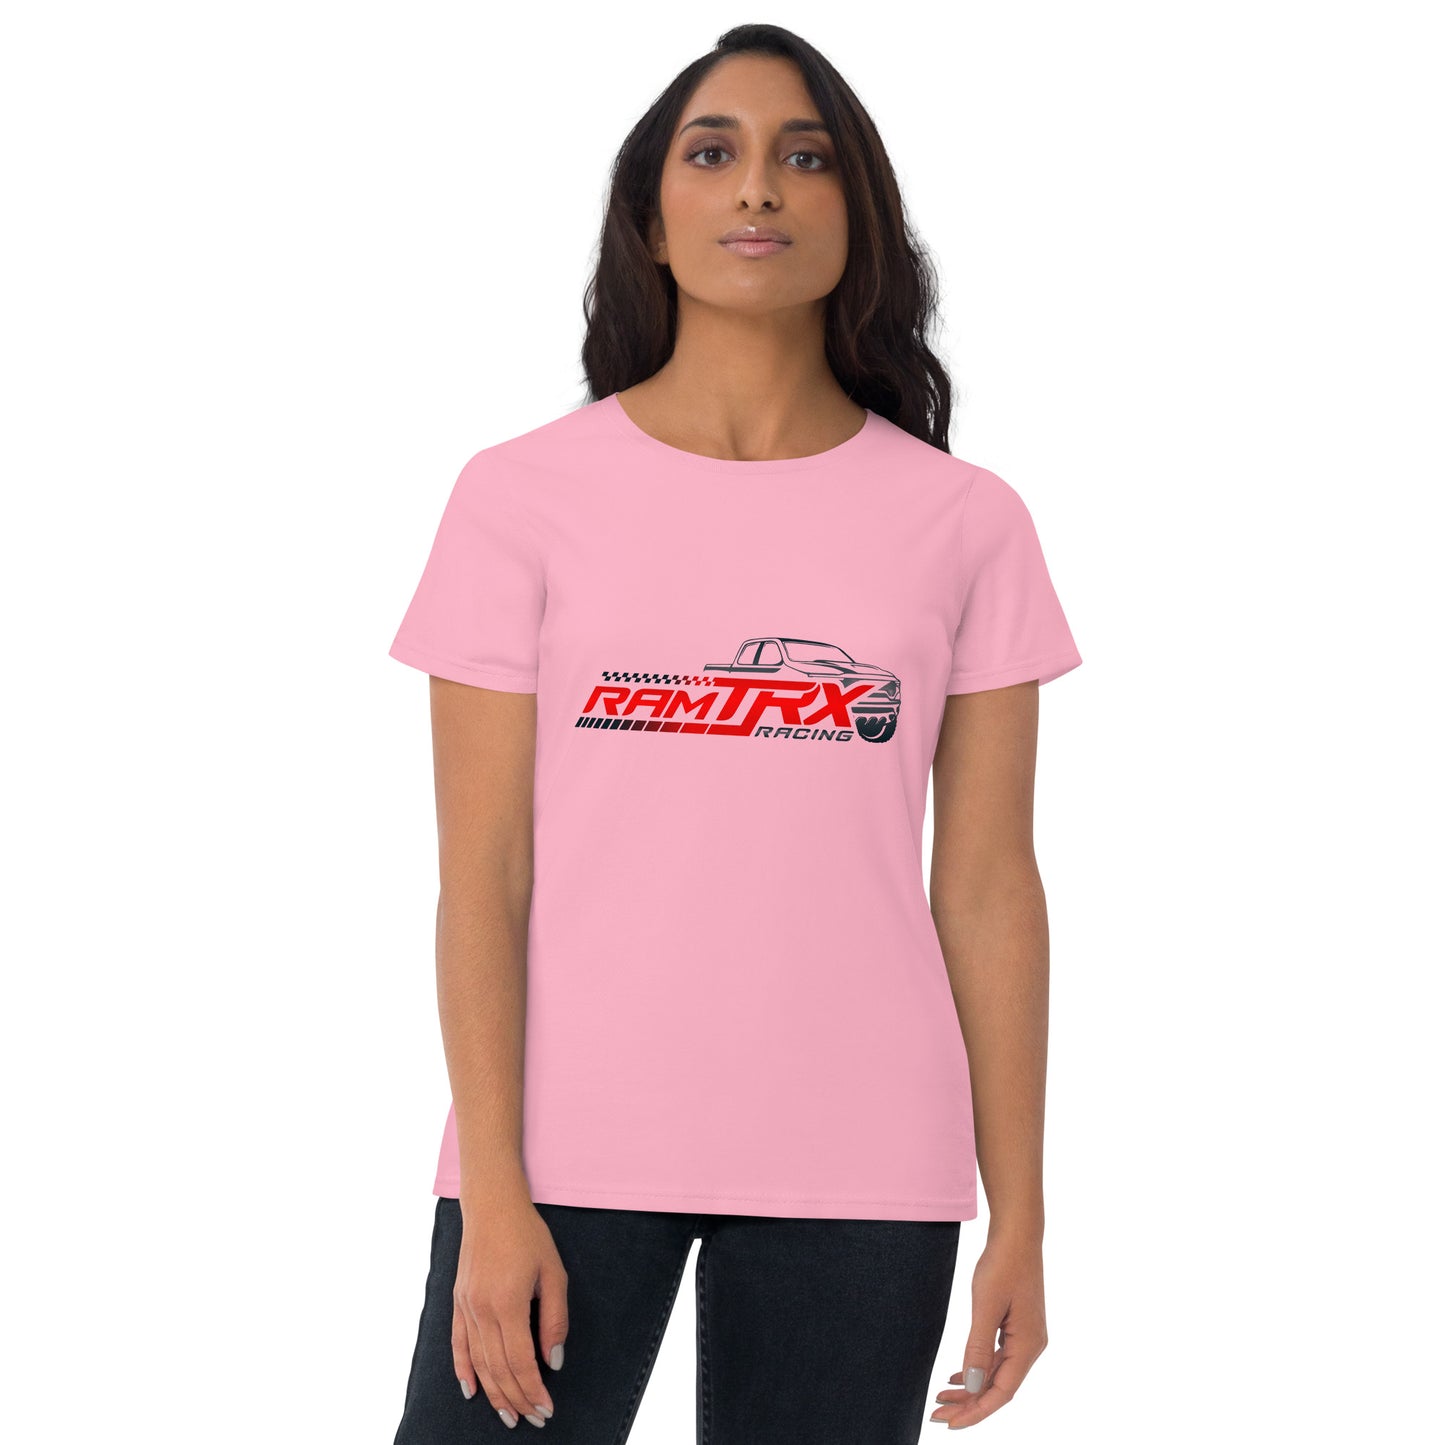 Women's Ram TRX Racing short sleeve t-shirt